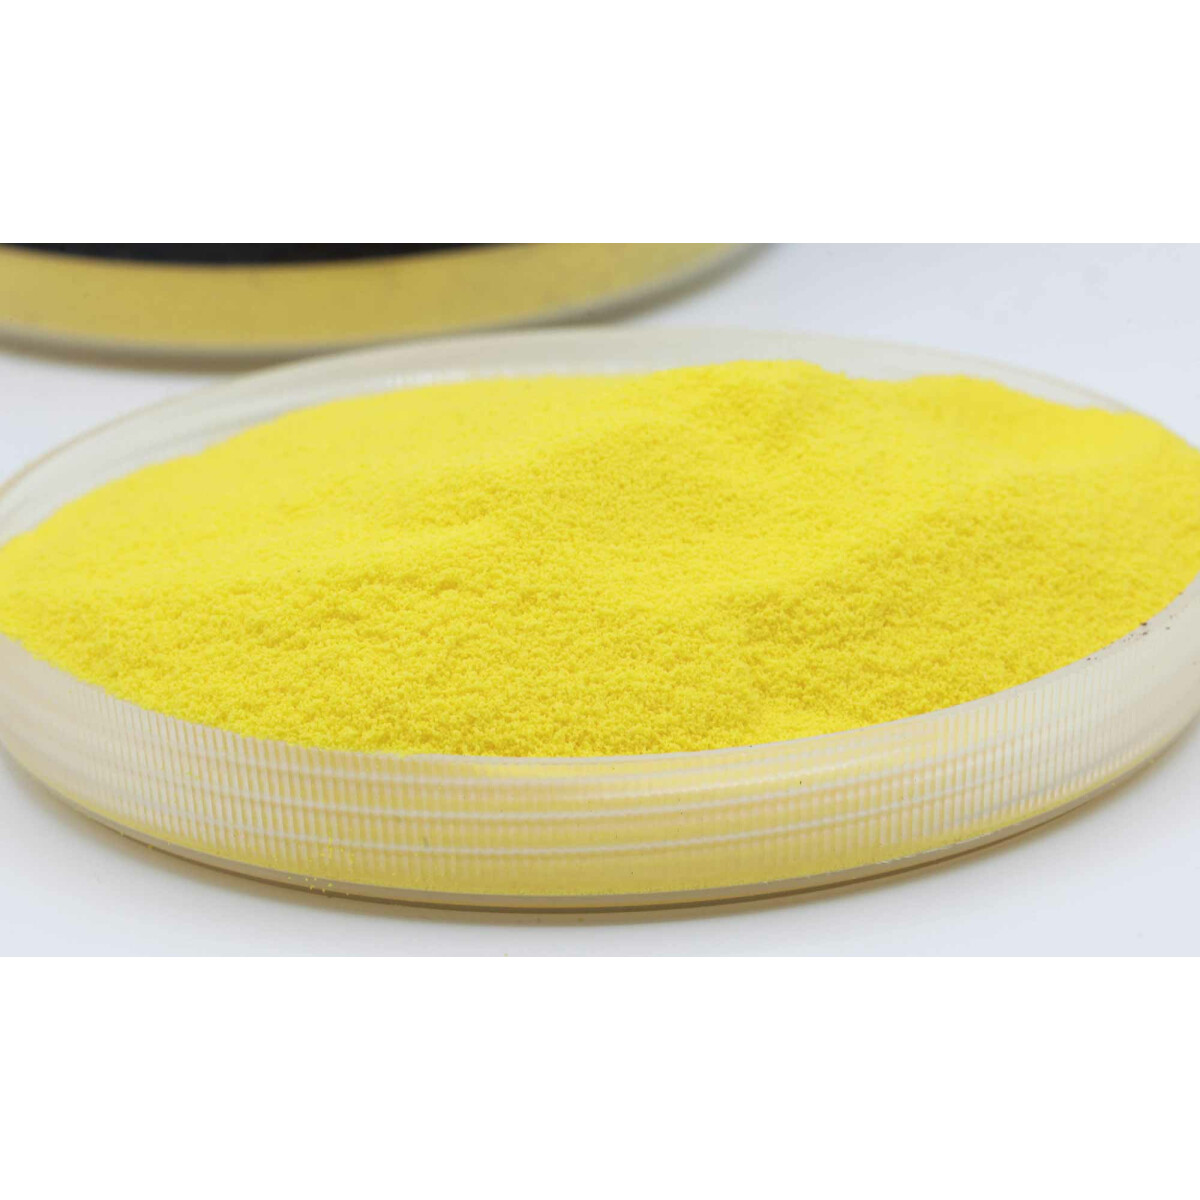 Carpleads Powder Coating - Gelb 200 g